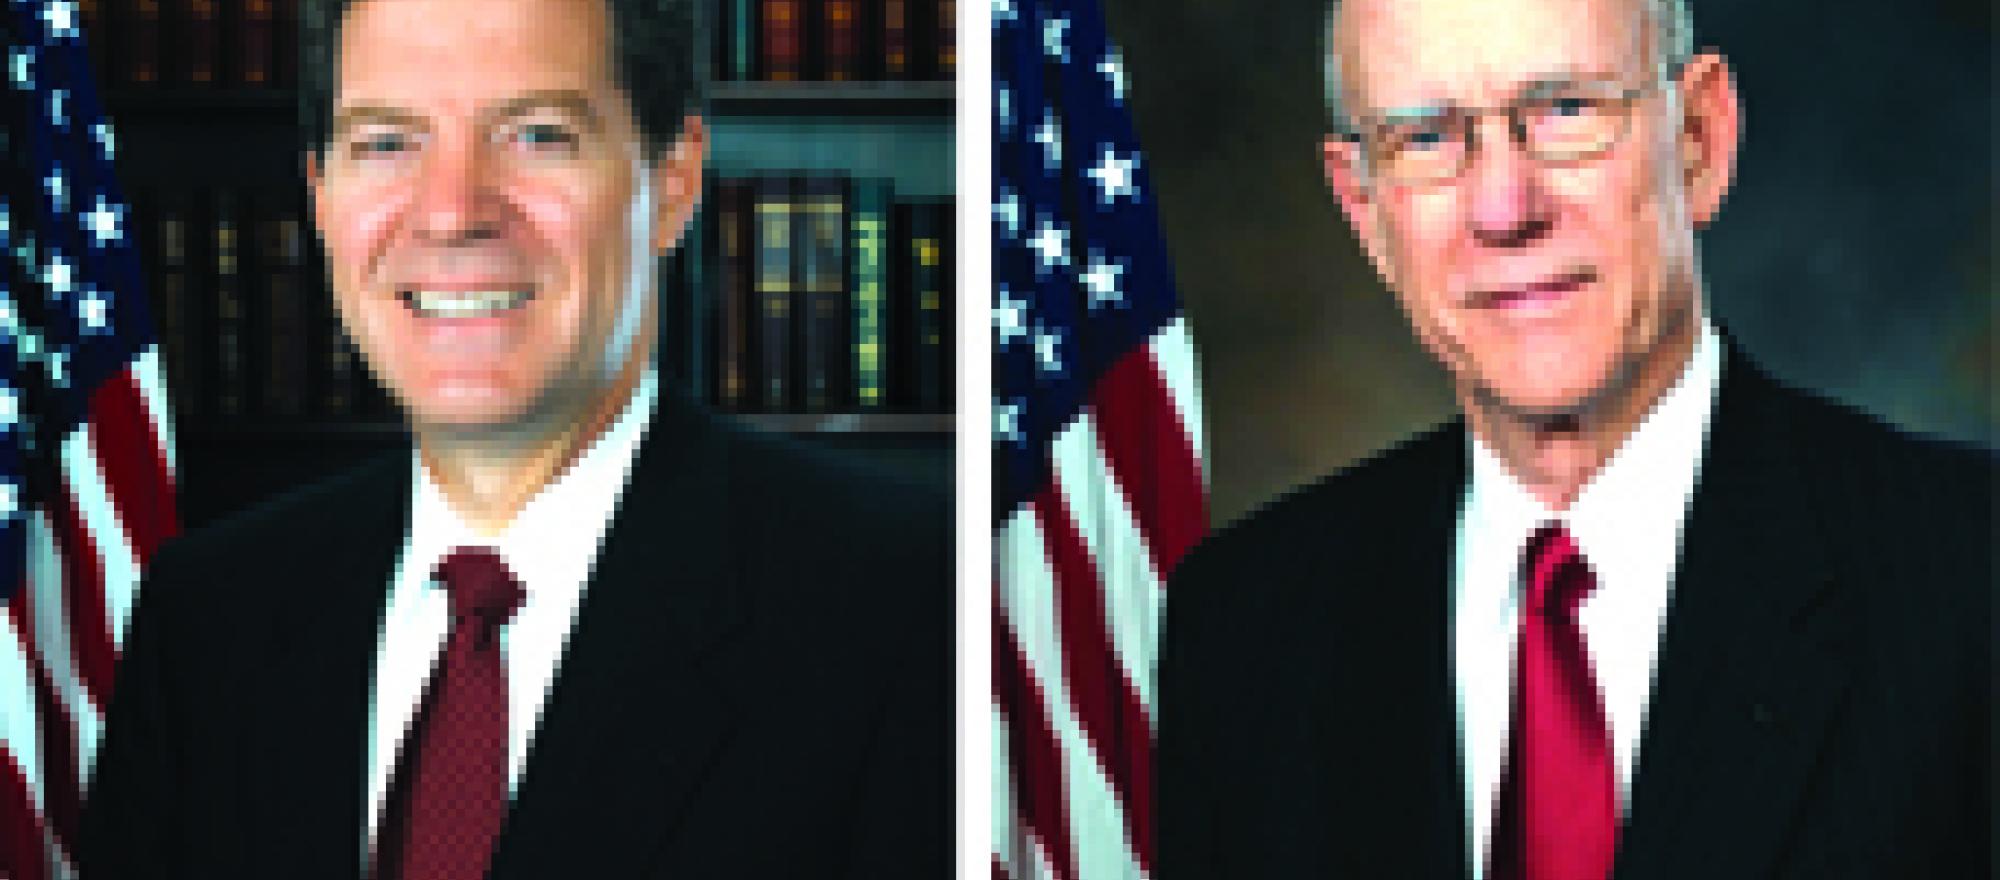 Senator Sam Brownback (R-Kan.) and Senator Pat Roberts (R-Kan.)